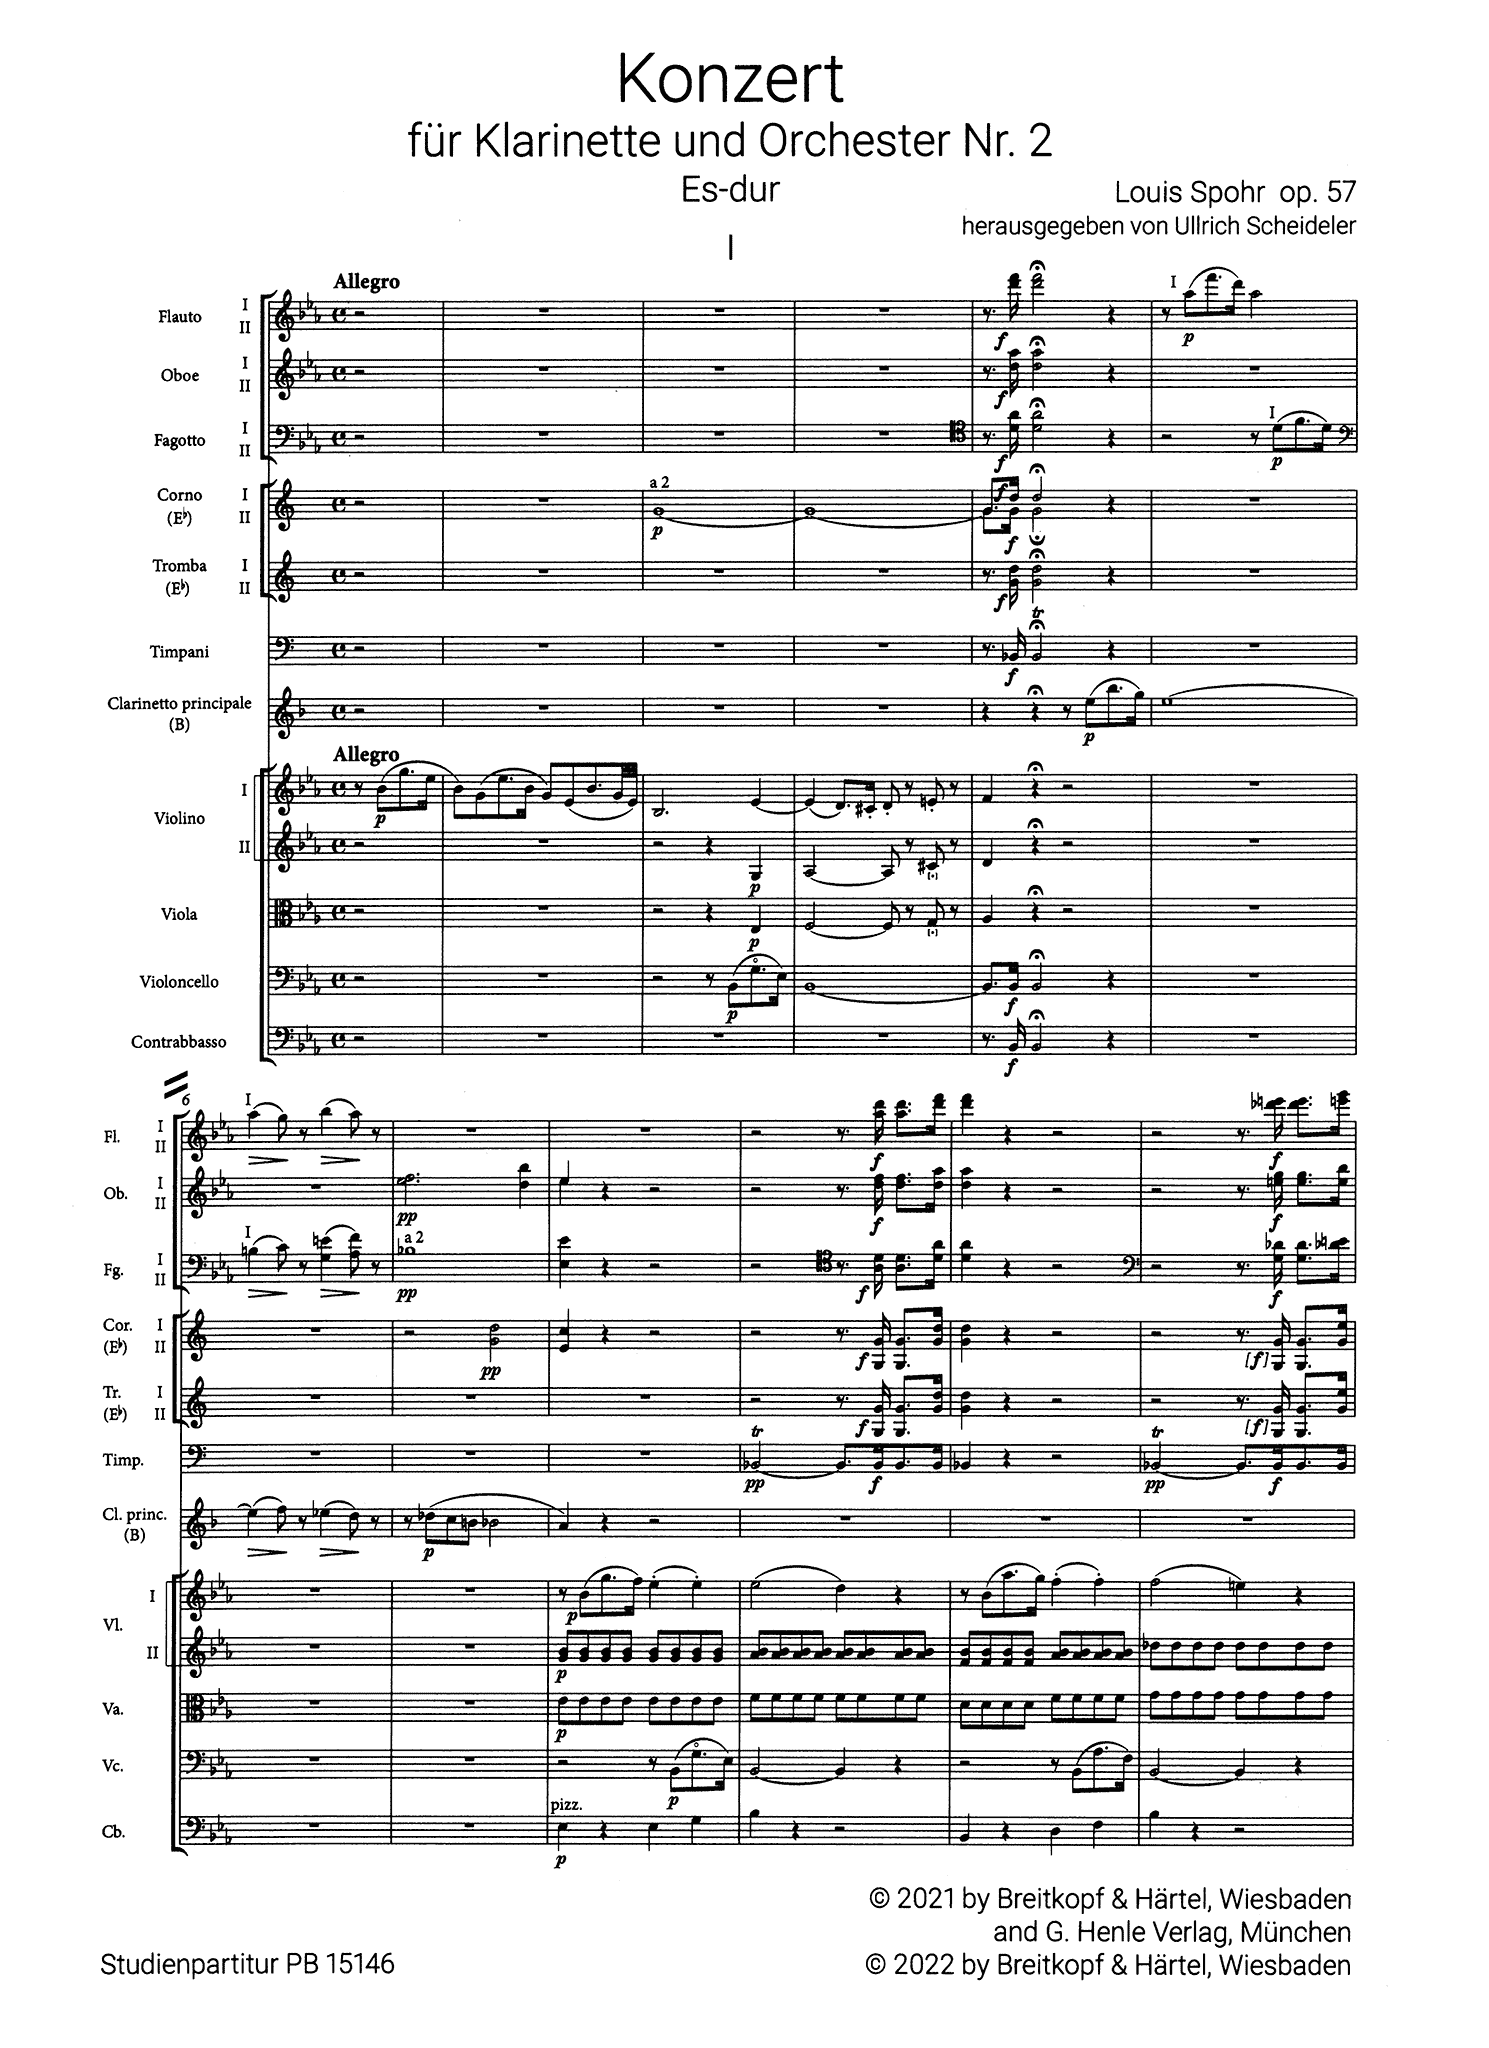 Spohr Clarinet Concerto No. 2 in E-flat Major, Op. 57 mini score - Movement 1